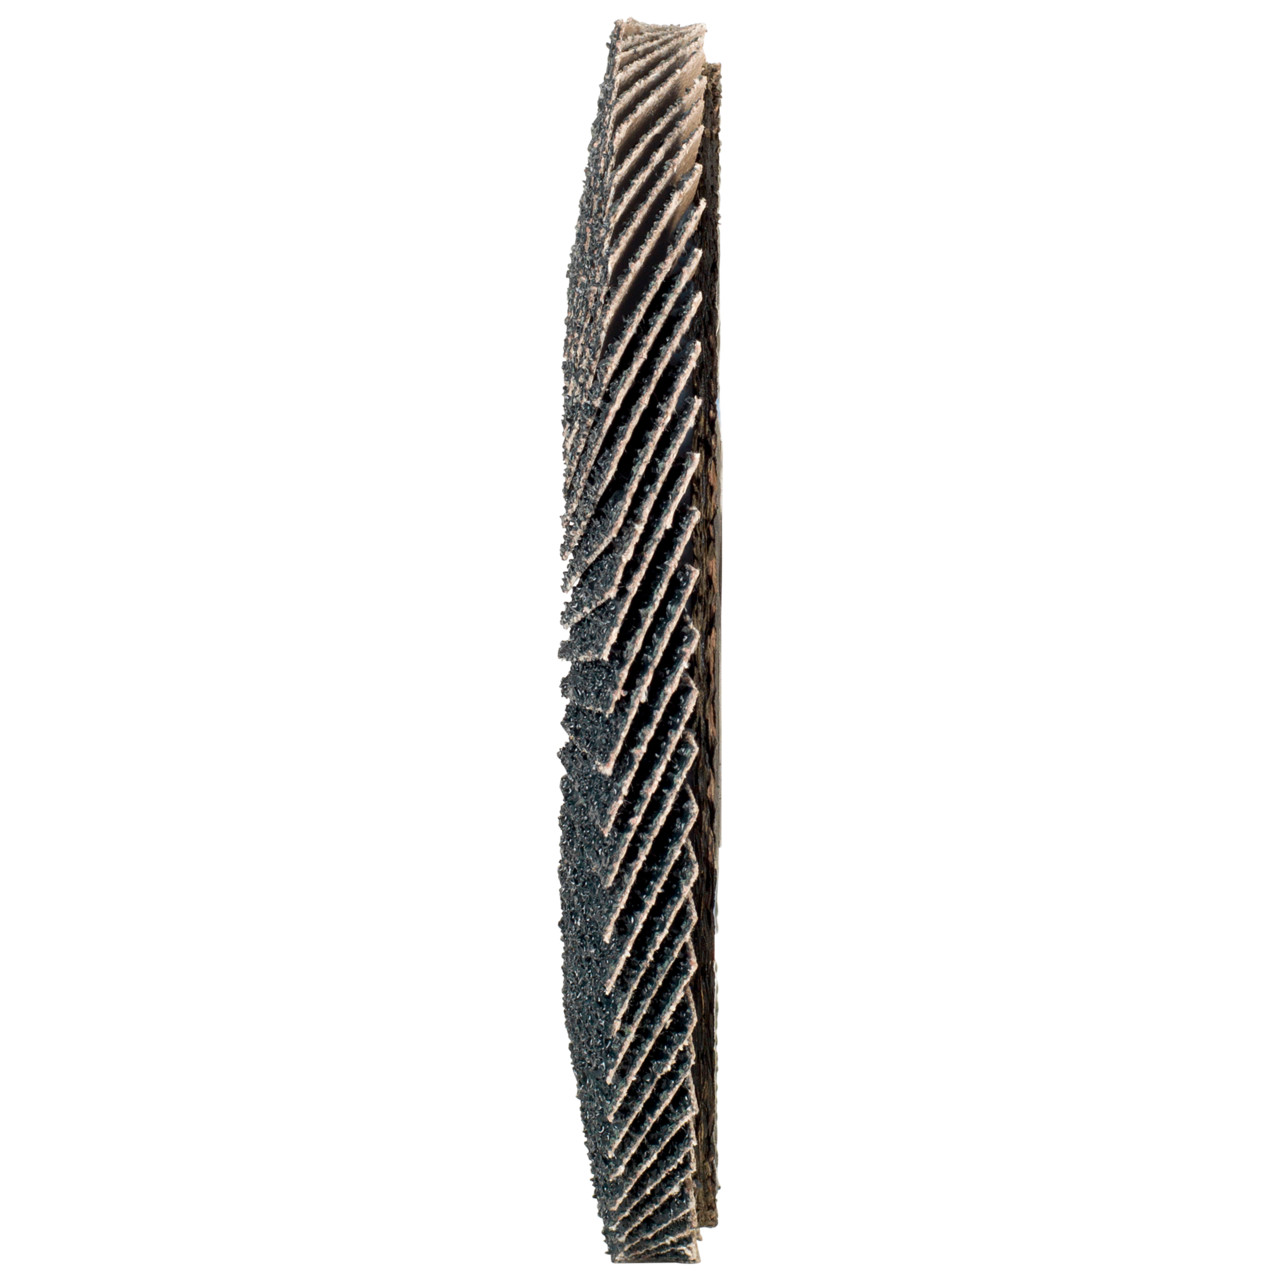 Tyrolit Gekartelde borgring DxH 178x22,2 2in1 voor staal &amp; roestvrij staal, P120, vorm: 27A - offset versie (glasvezeldrager huisversie), Art. 643807